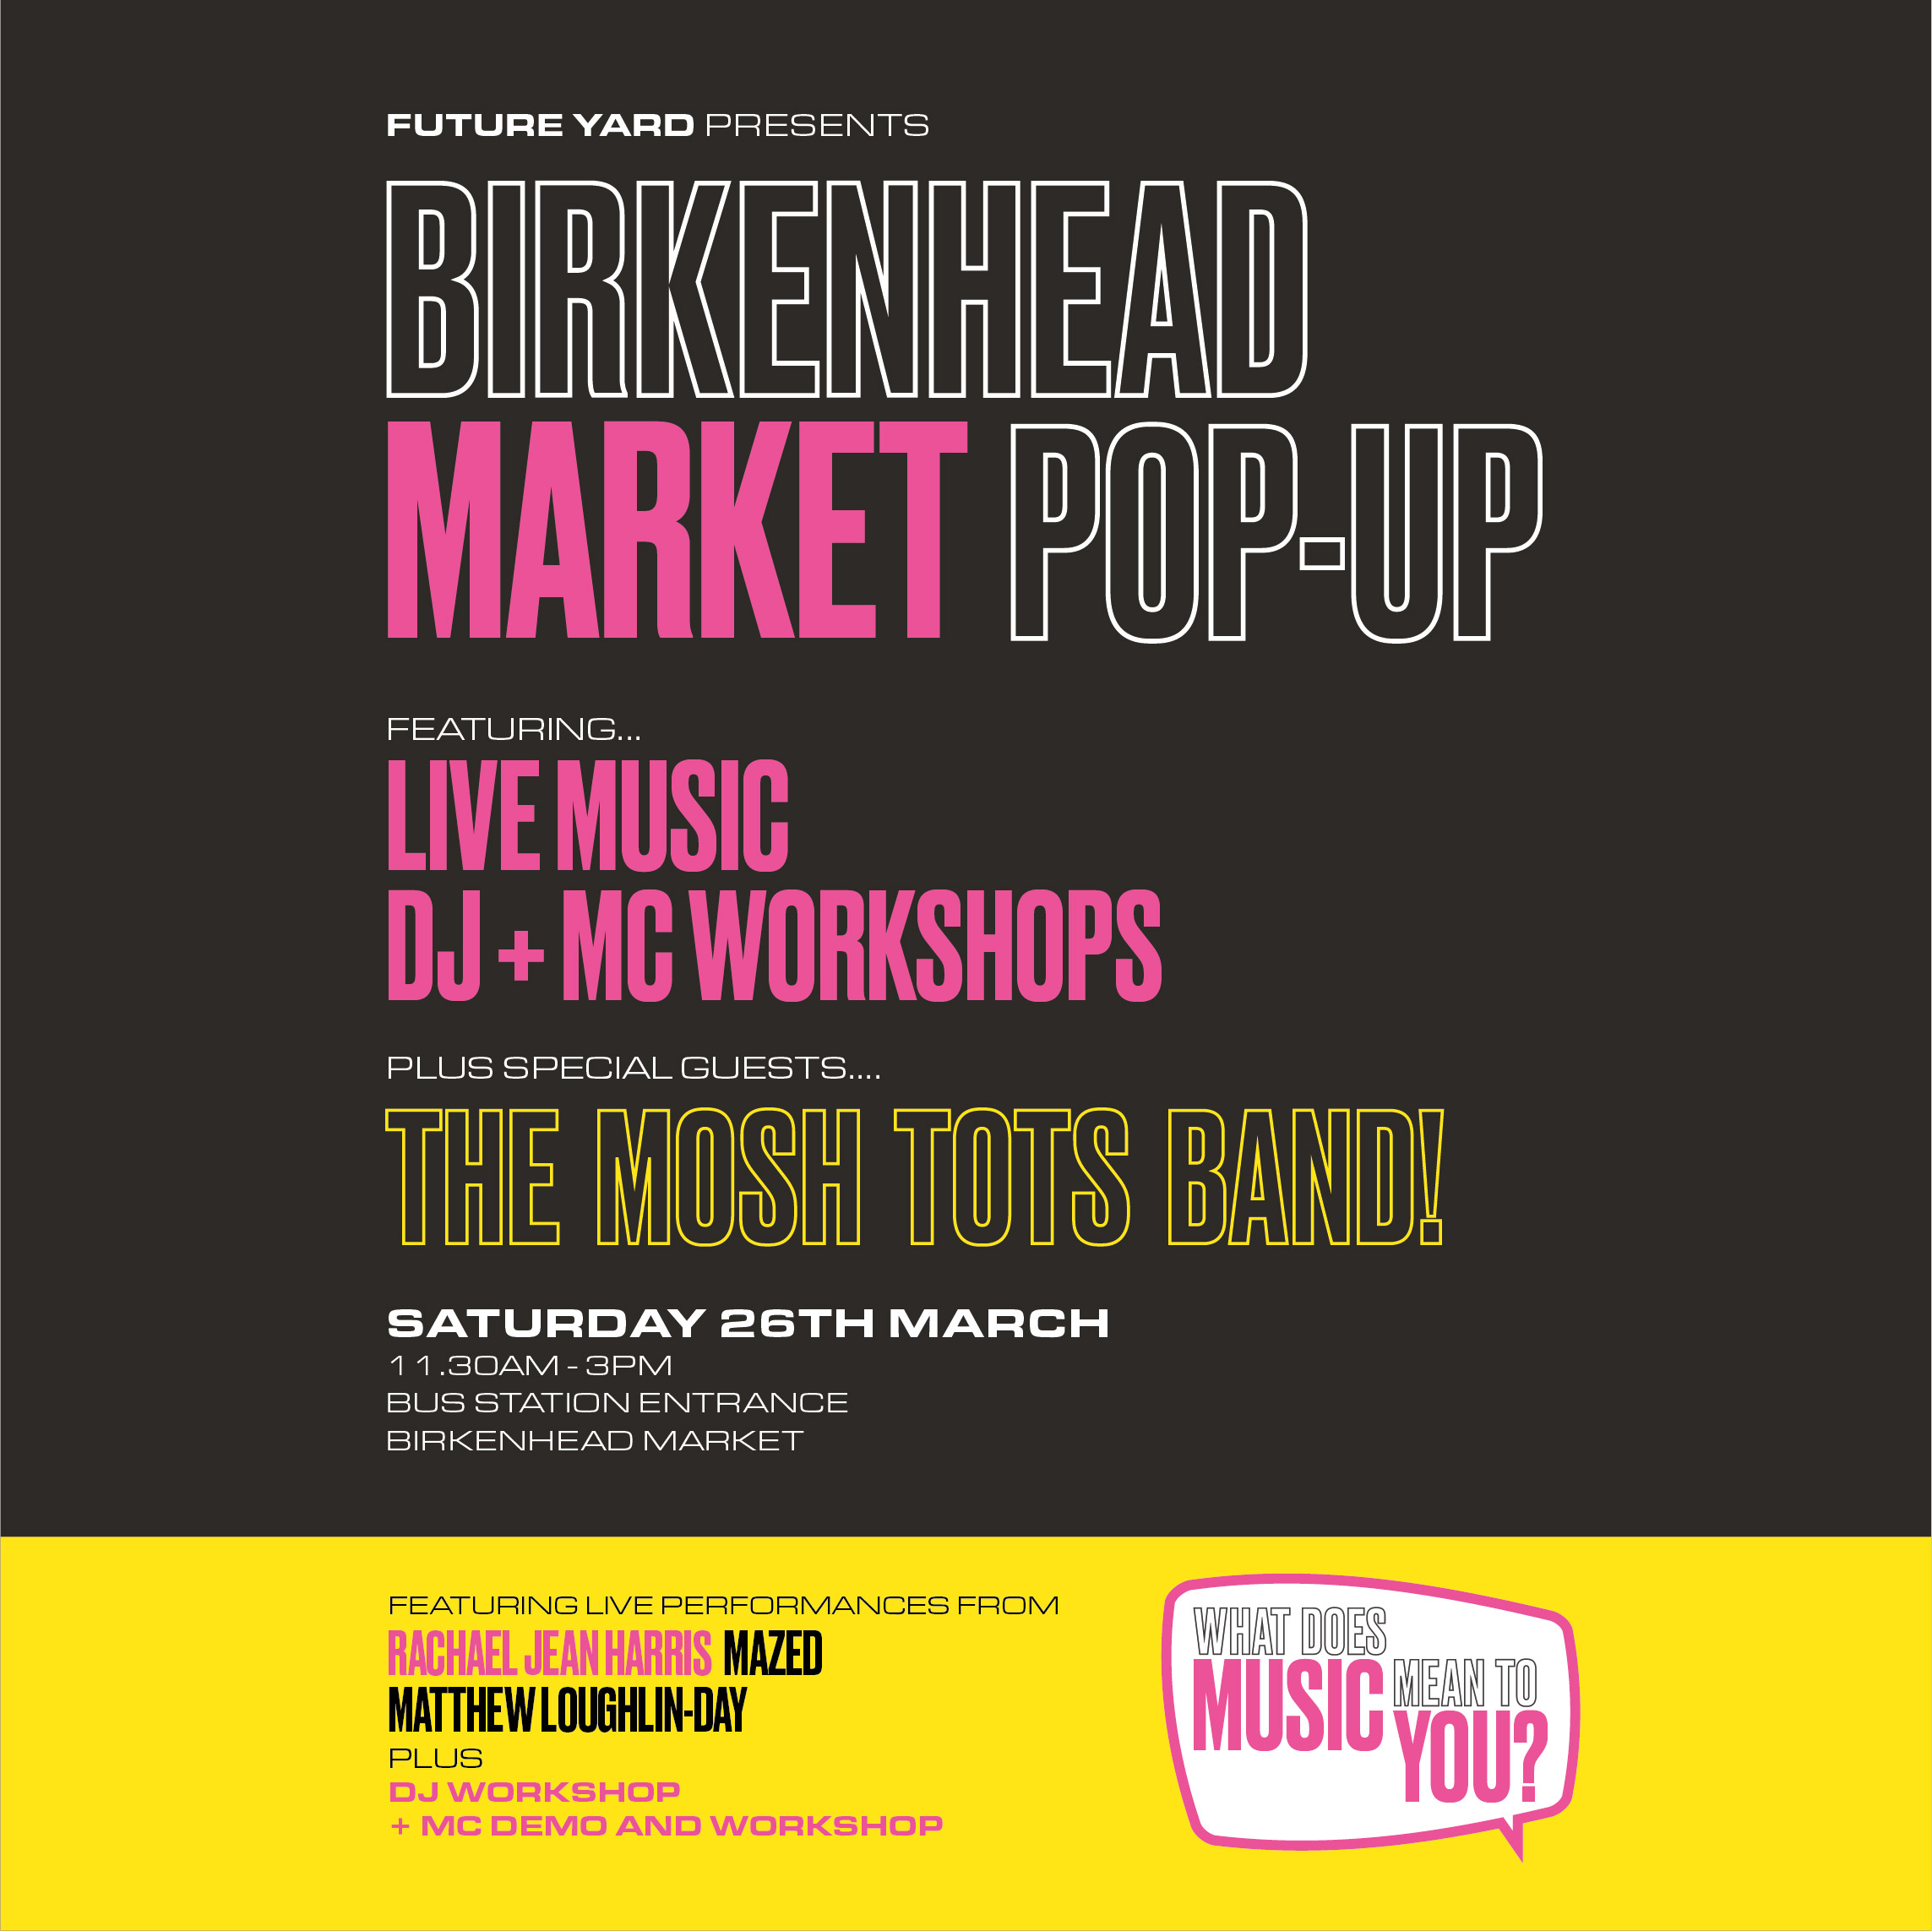 Birkenhead market pop-up Future Yard